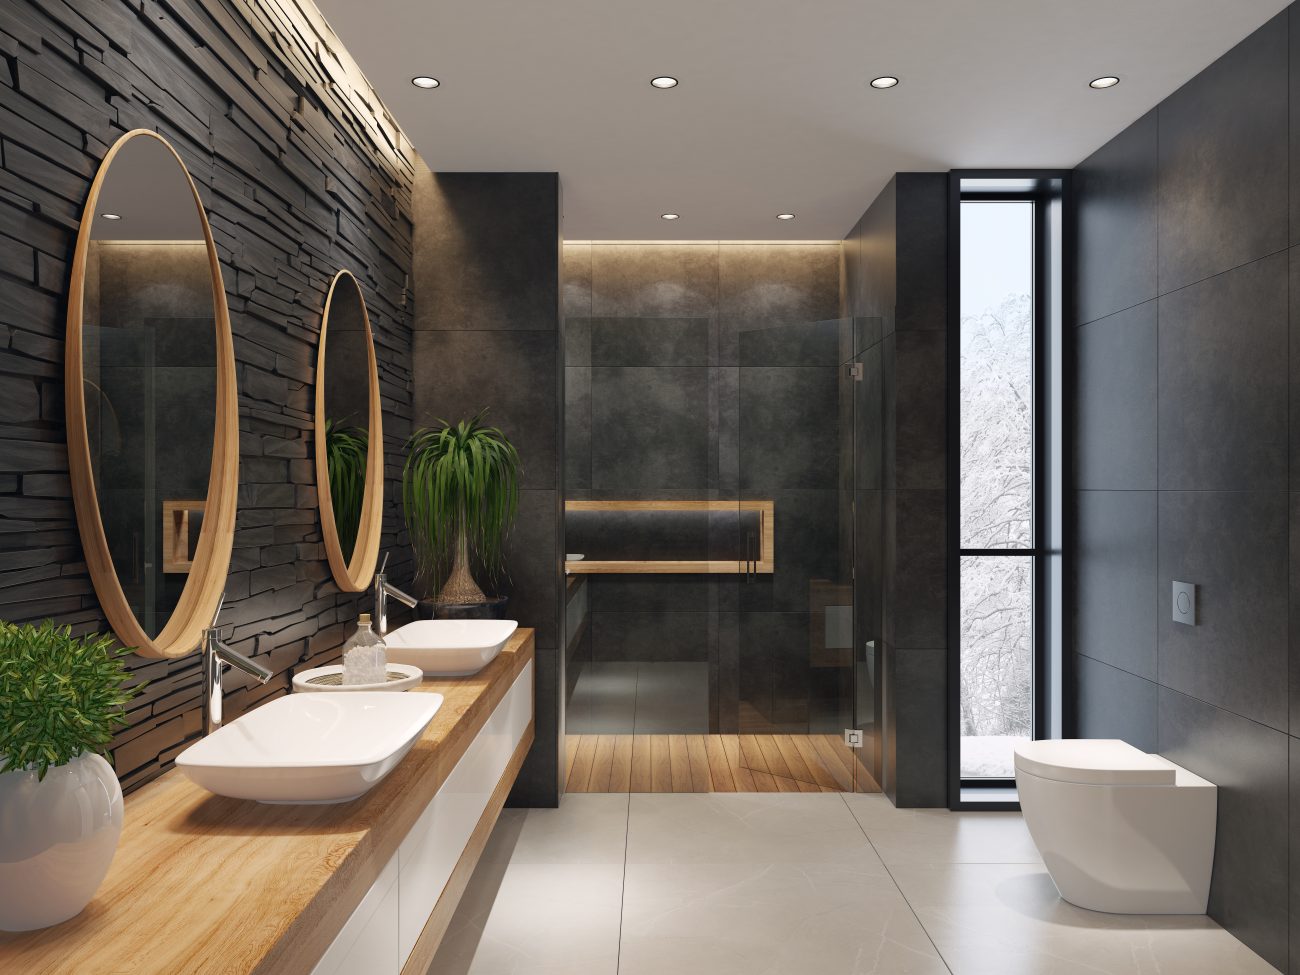 Salle de bain contemporaine avec miroirs ronds, mur en pierre noire mate, carreaux de sol pâles et éclairage encastré